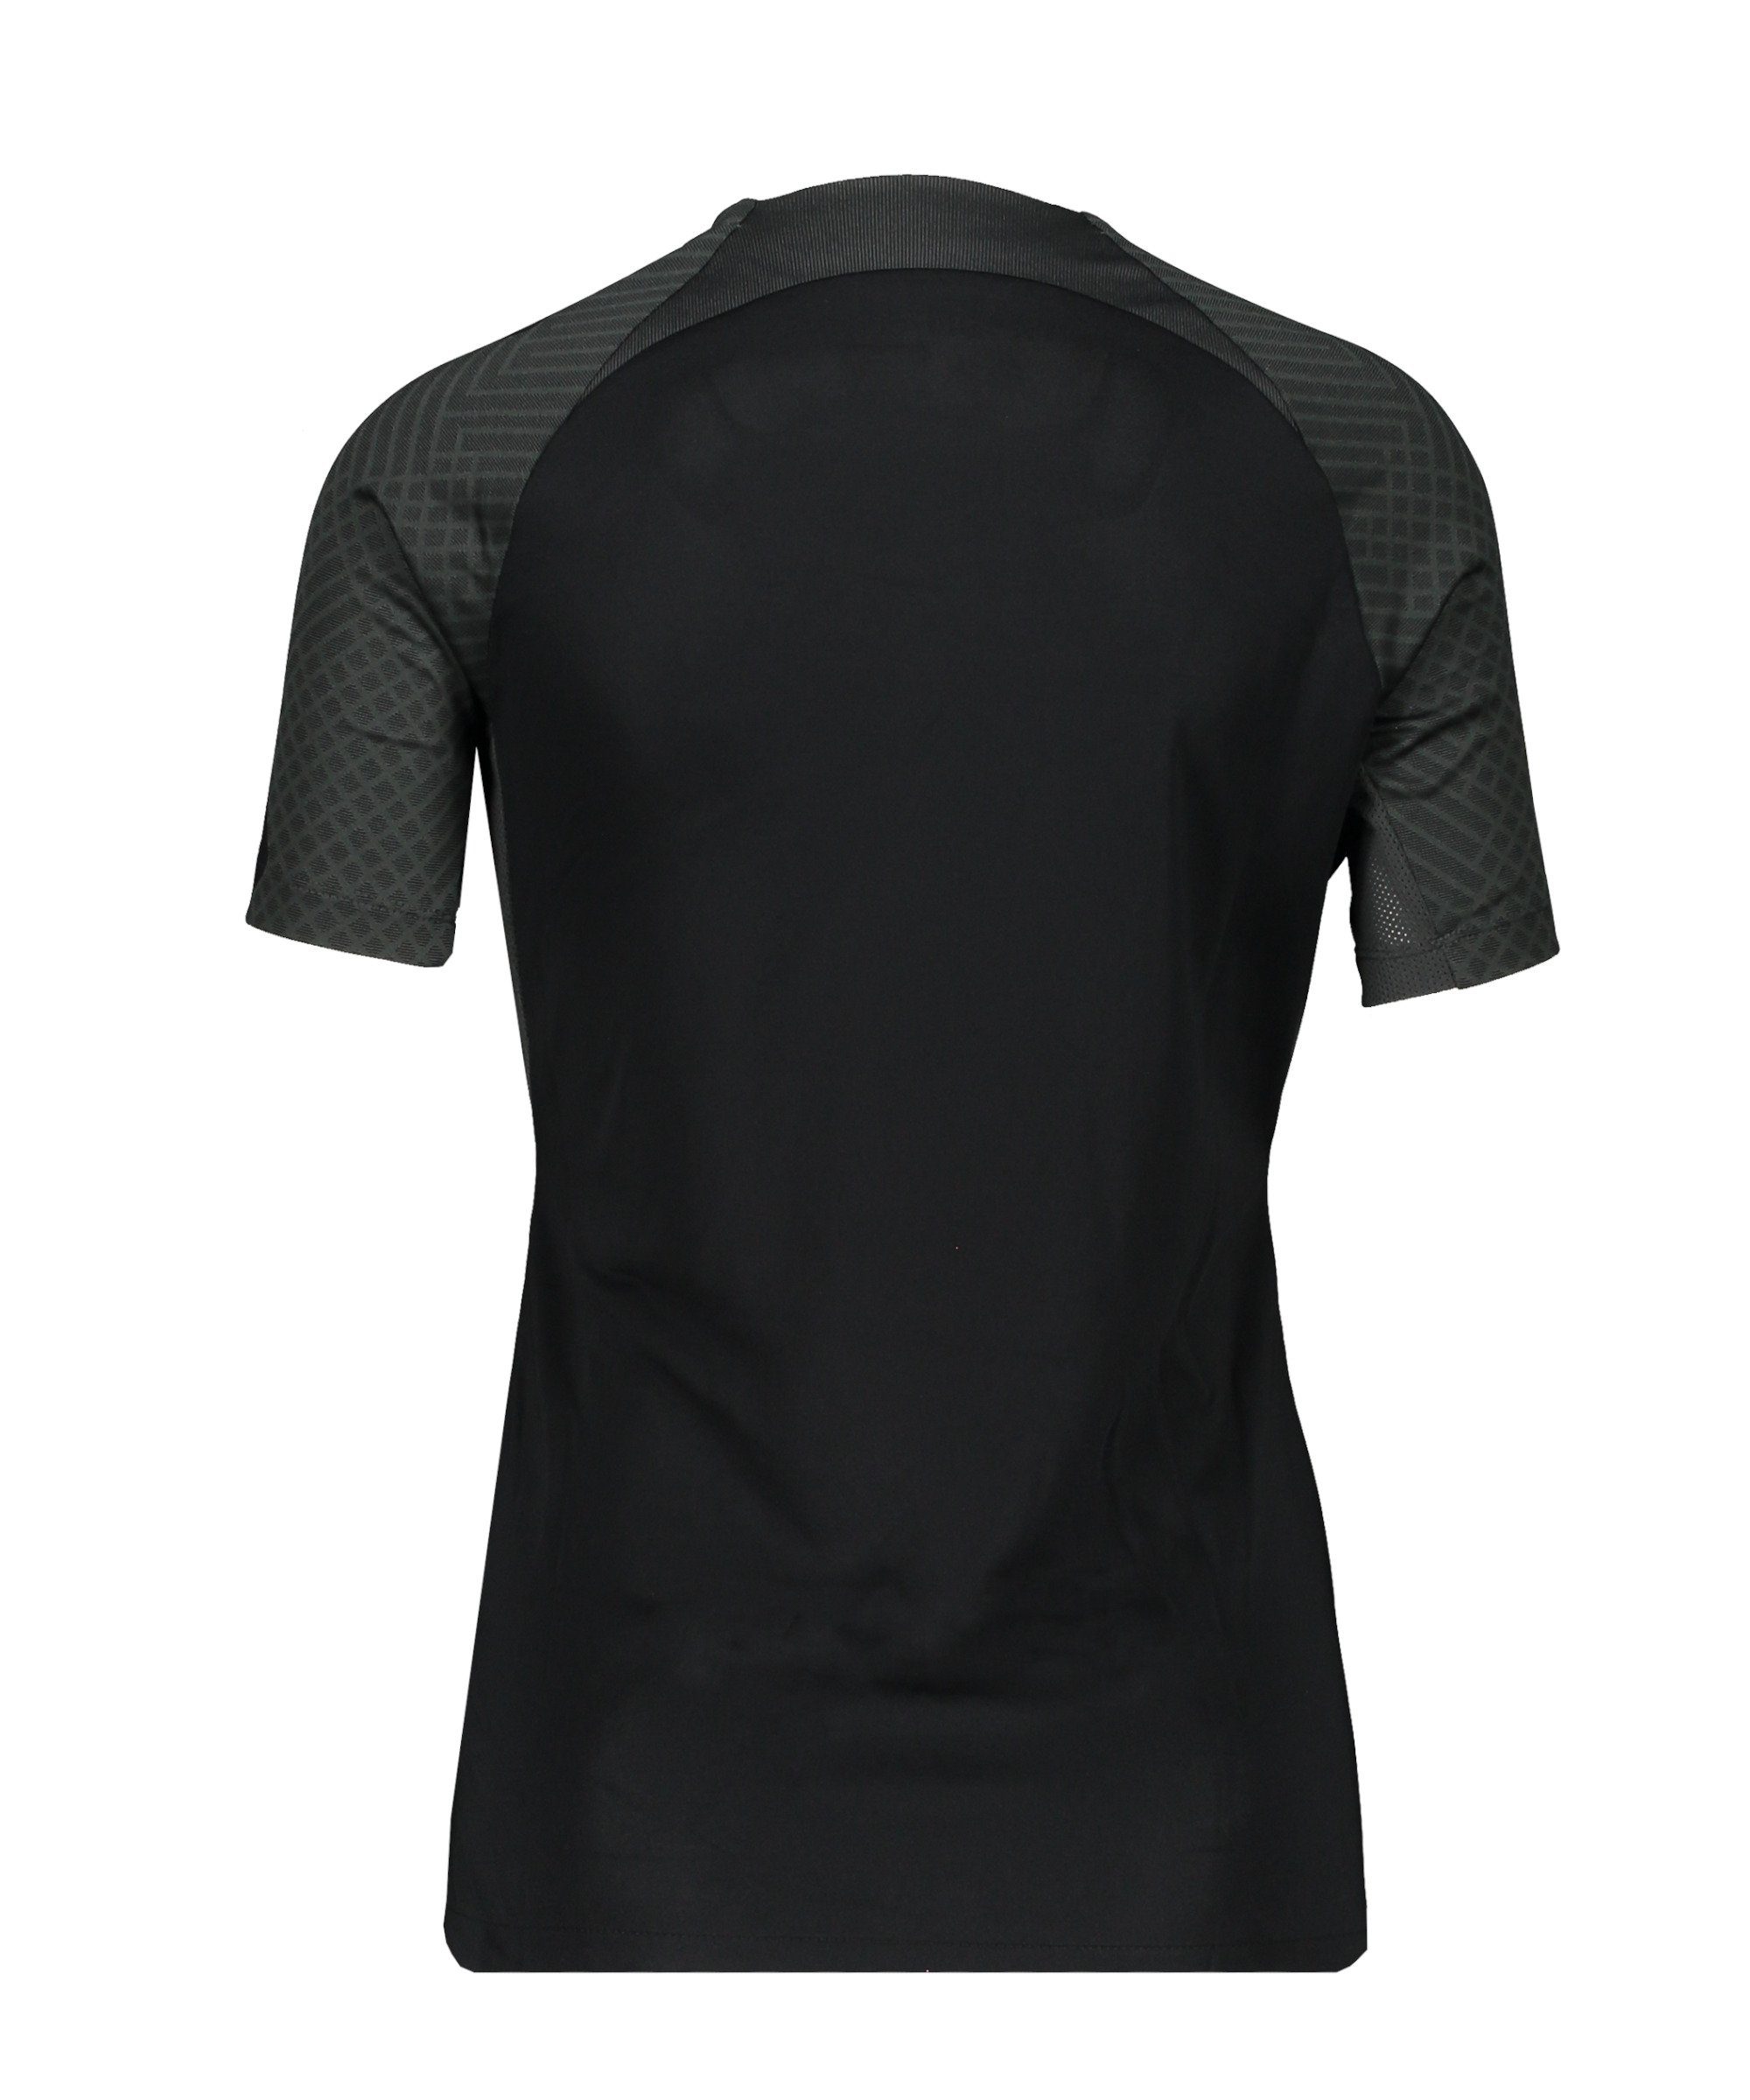 Damen default Nike T-Shirt grauweiss Strike T-Shirt